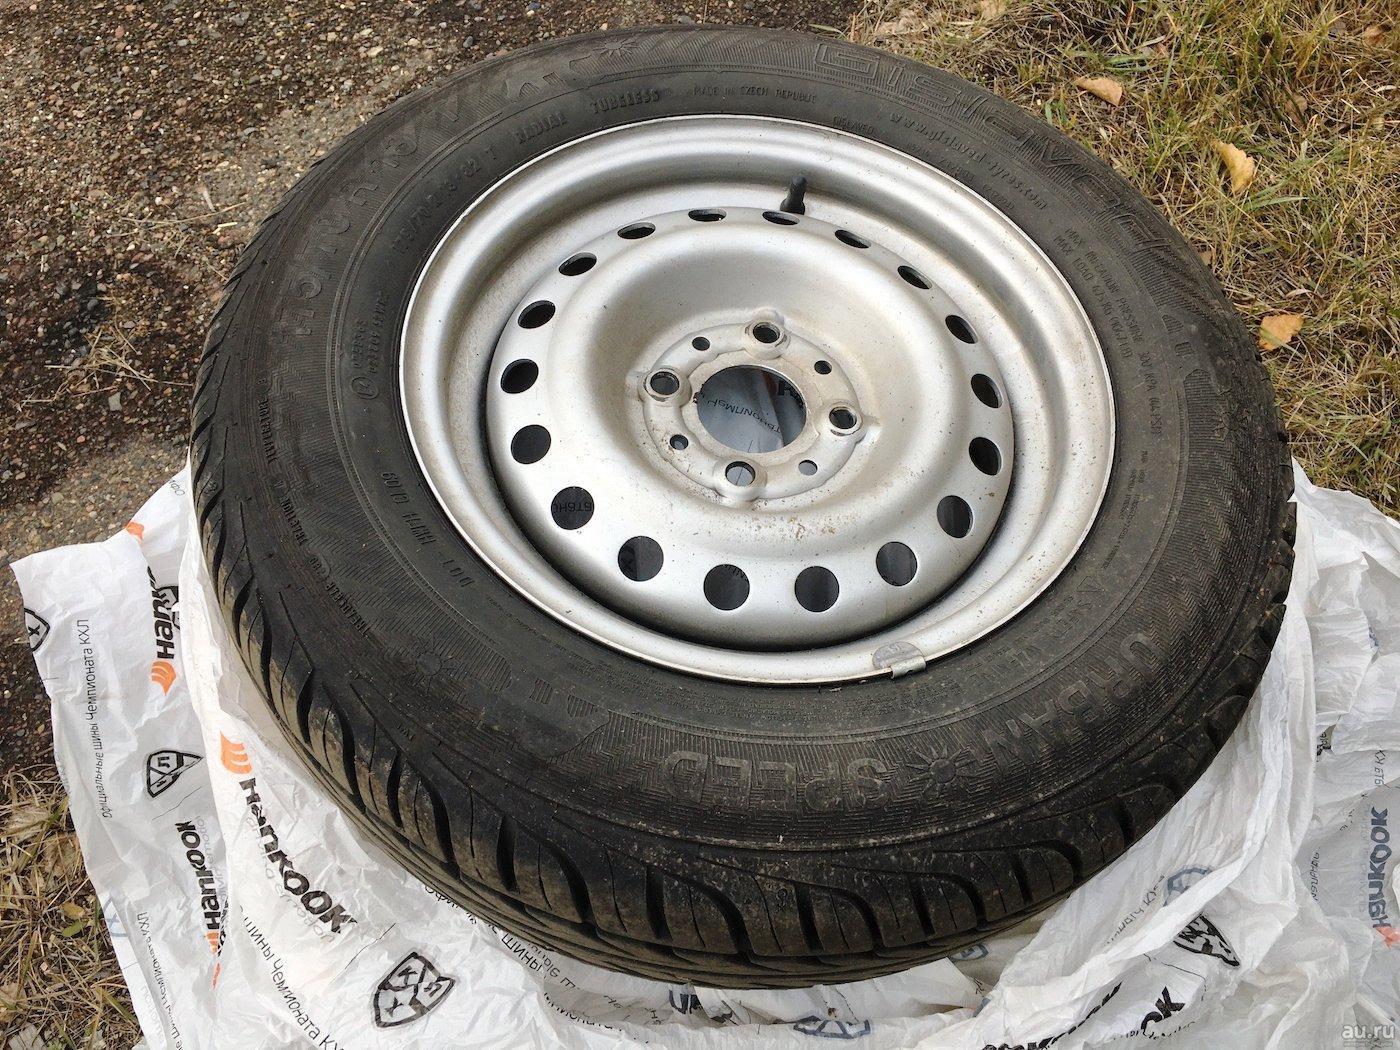 Pneumàtics d'estiu Gislaved Urban Speed: comentaris dels propietaris, mides i característiques dels pneumàtics, opinió d'experts sobre la qualitat dels pneumàtics